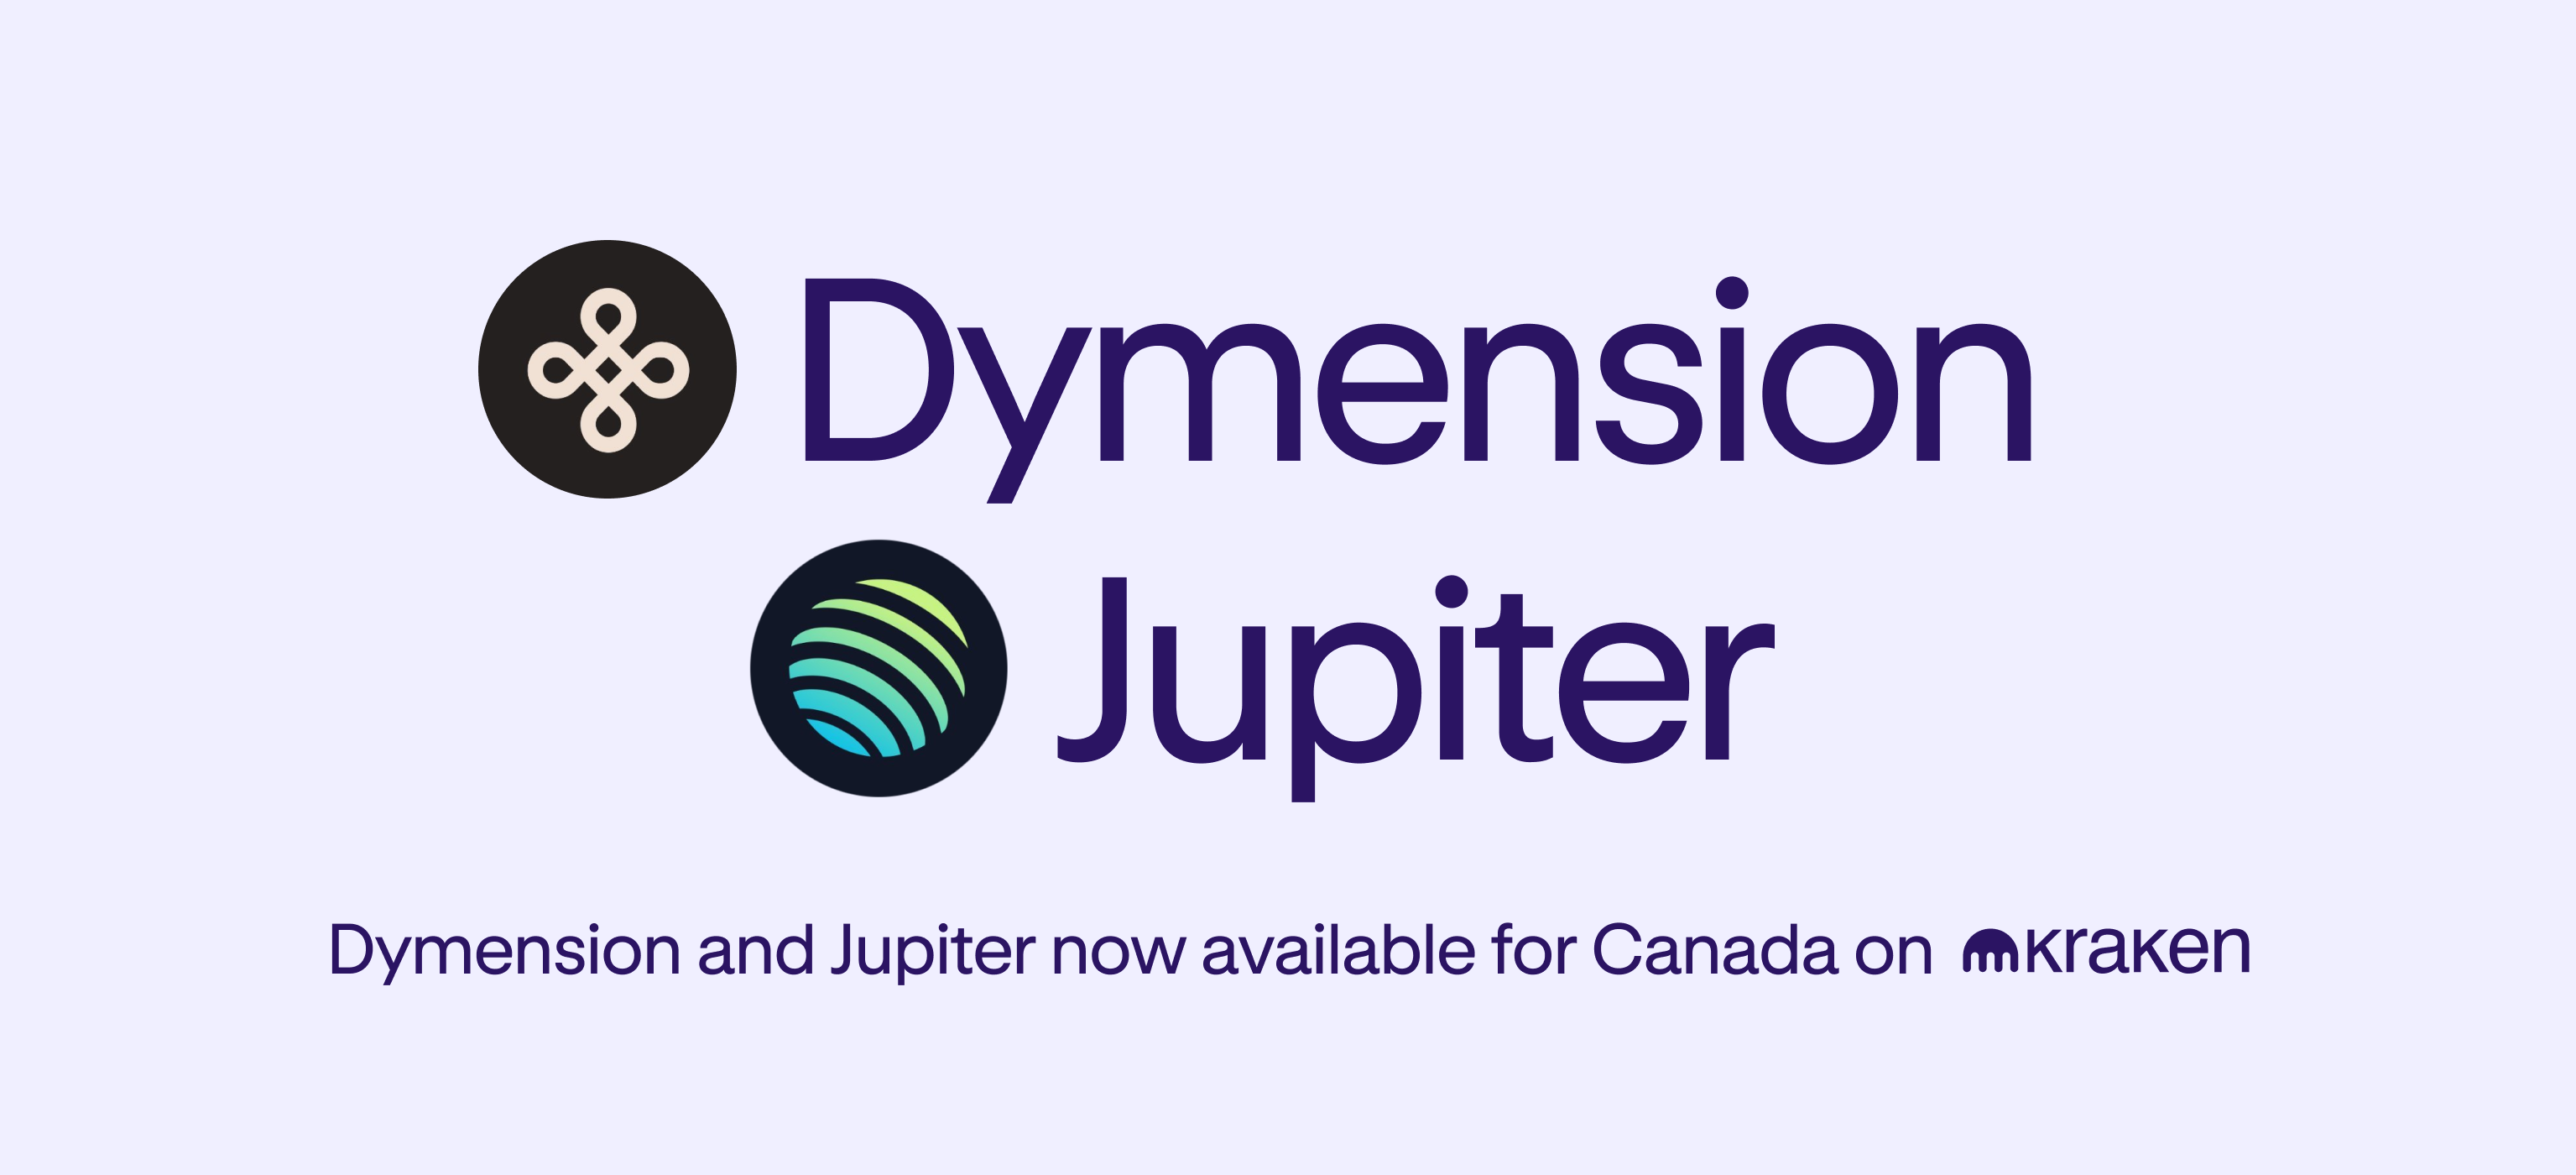 Trgovanje za Dymension (DYM) in Jupiter (JUP) se začne zdaj v Kanadi